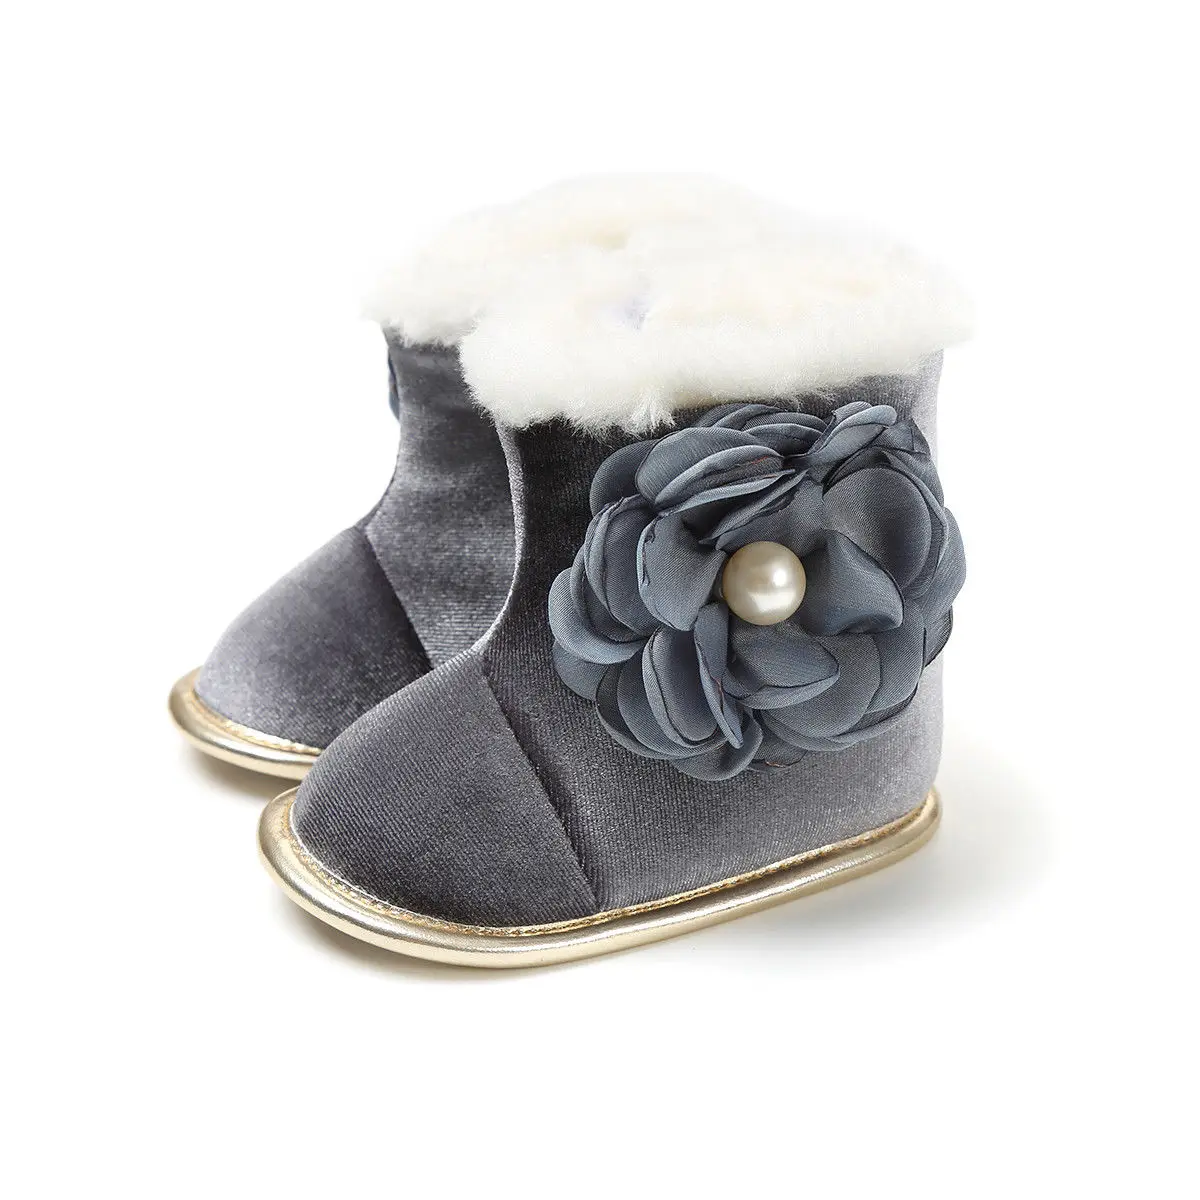 Новое поступление; брендовые ботинки мокасины с бантом и цветами для маленьких девочек; зимняя обувь на мягкой подошве; теплые зимние ботинки на молнии - Цвет: Серый